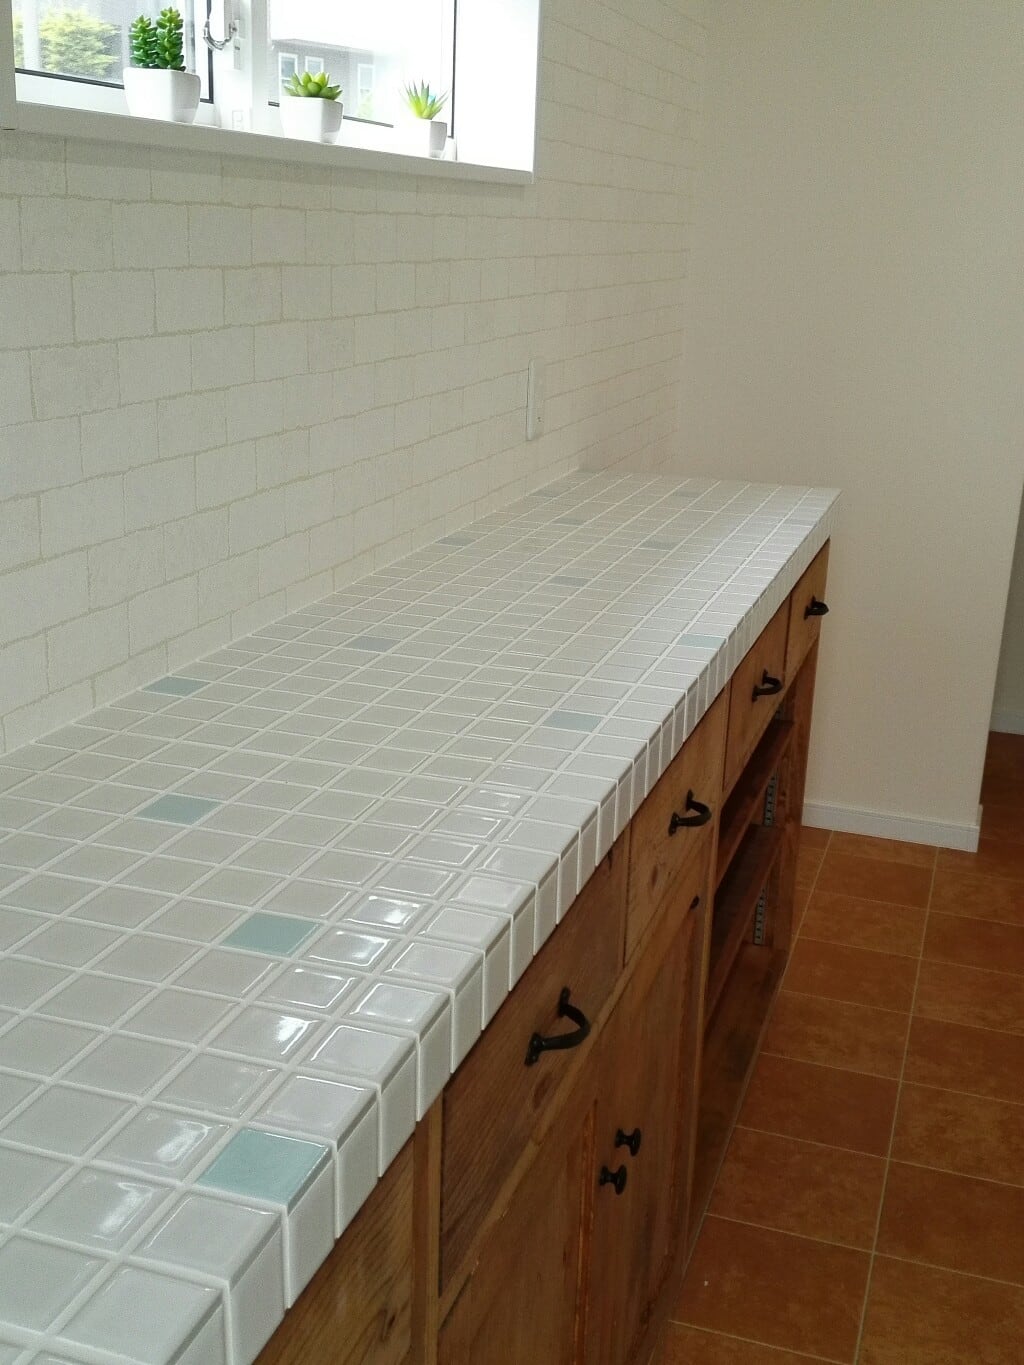 水色と白のタイルトップ キッチンカウンター オーダー家具のKINOKA